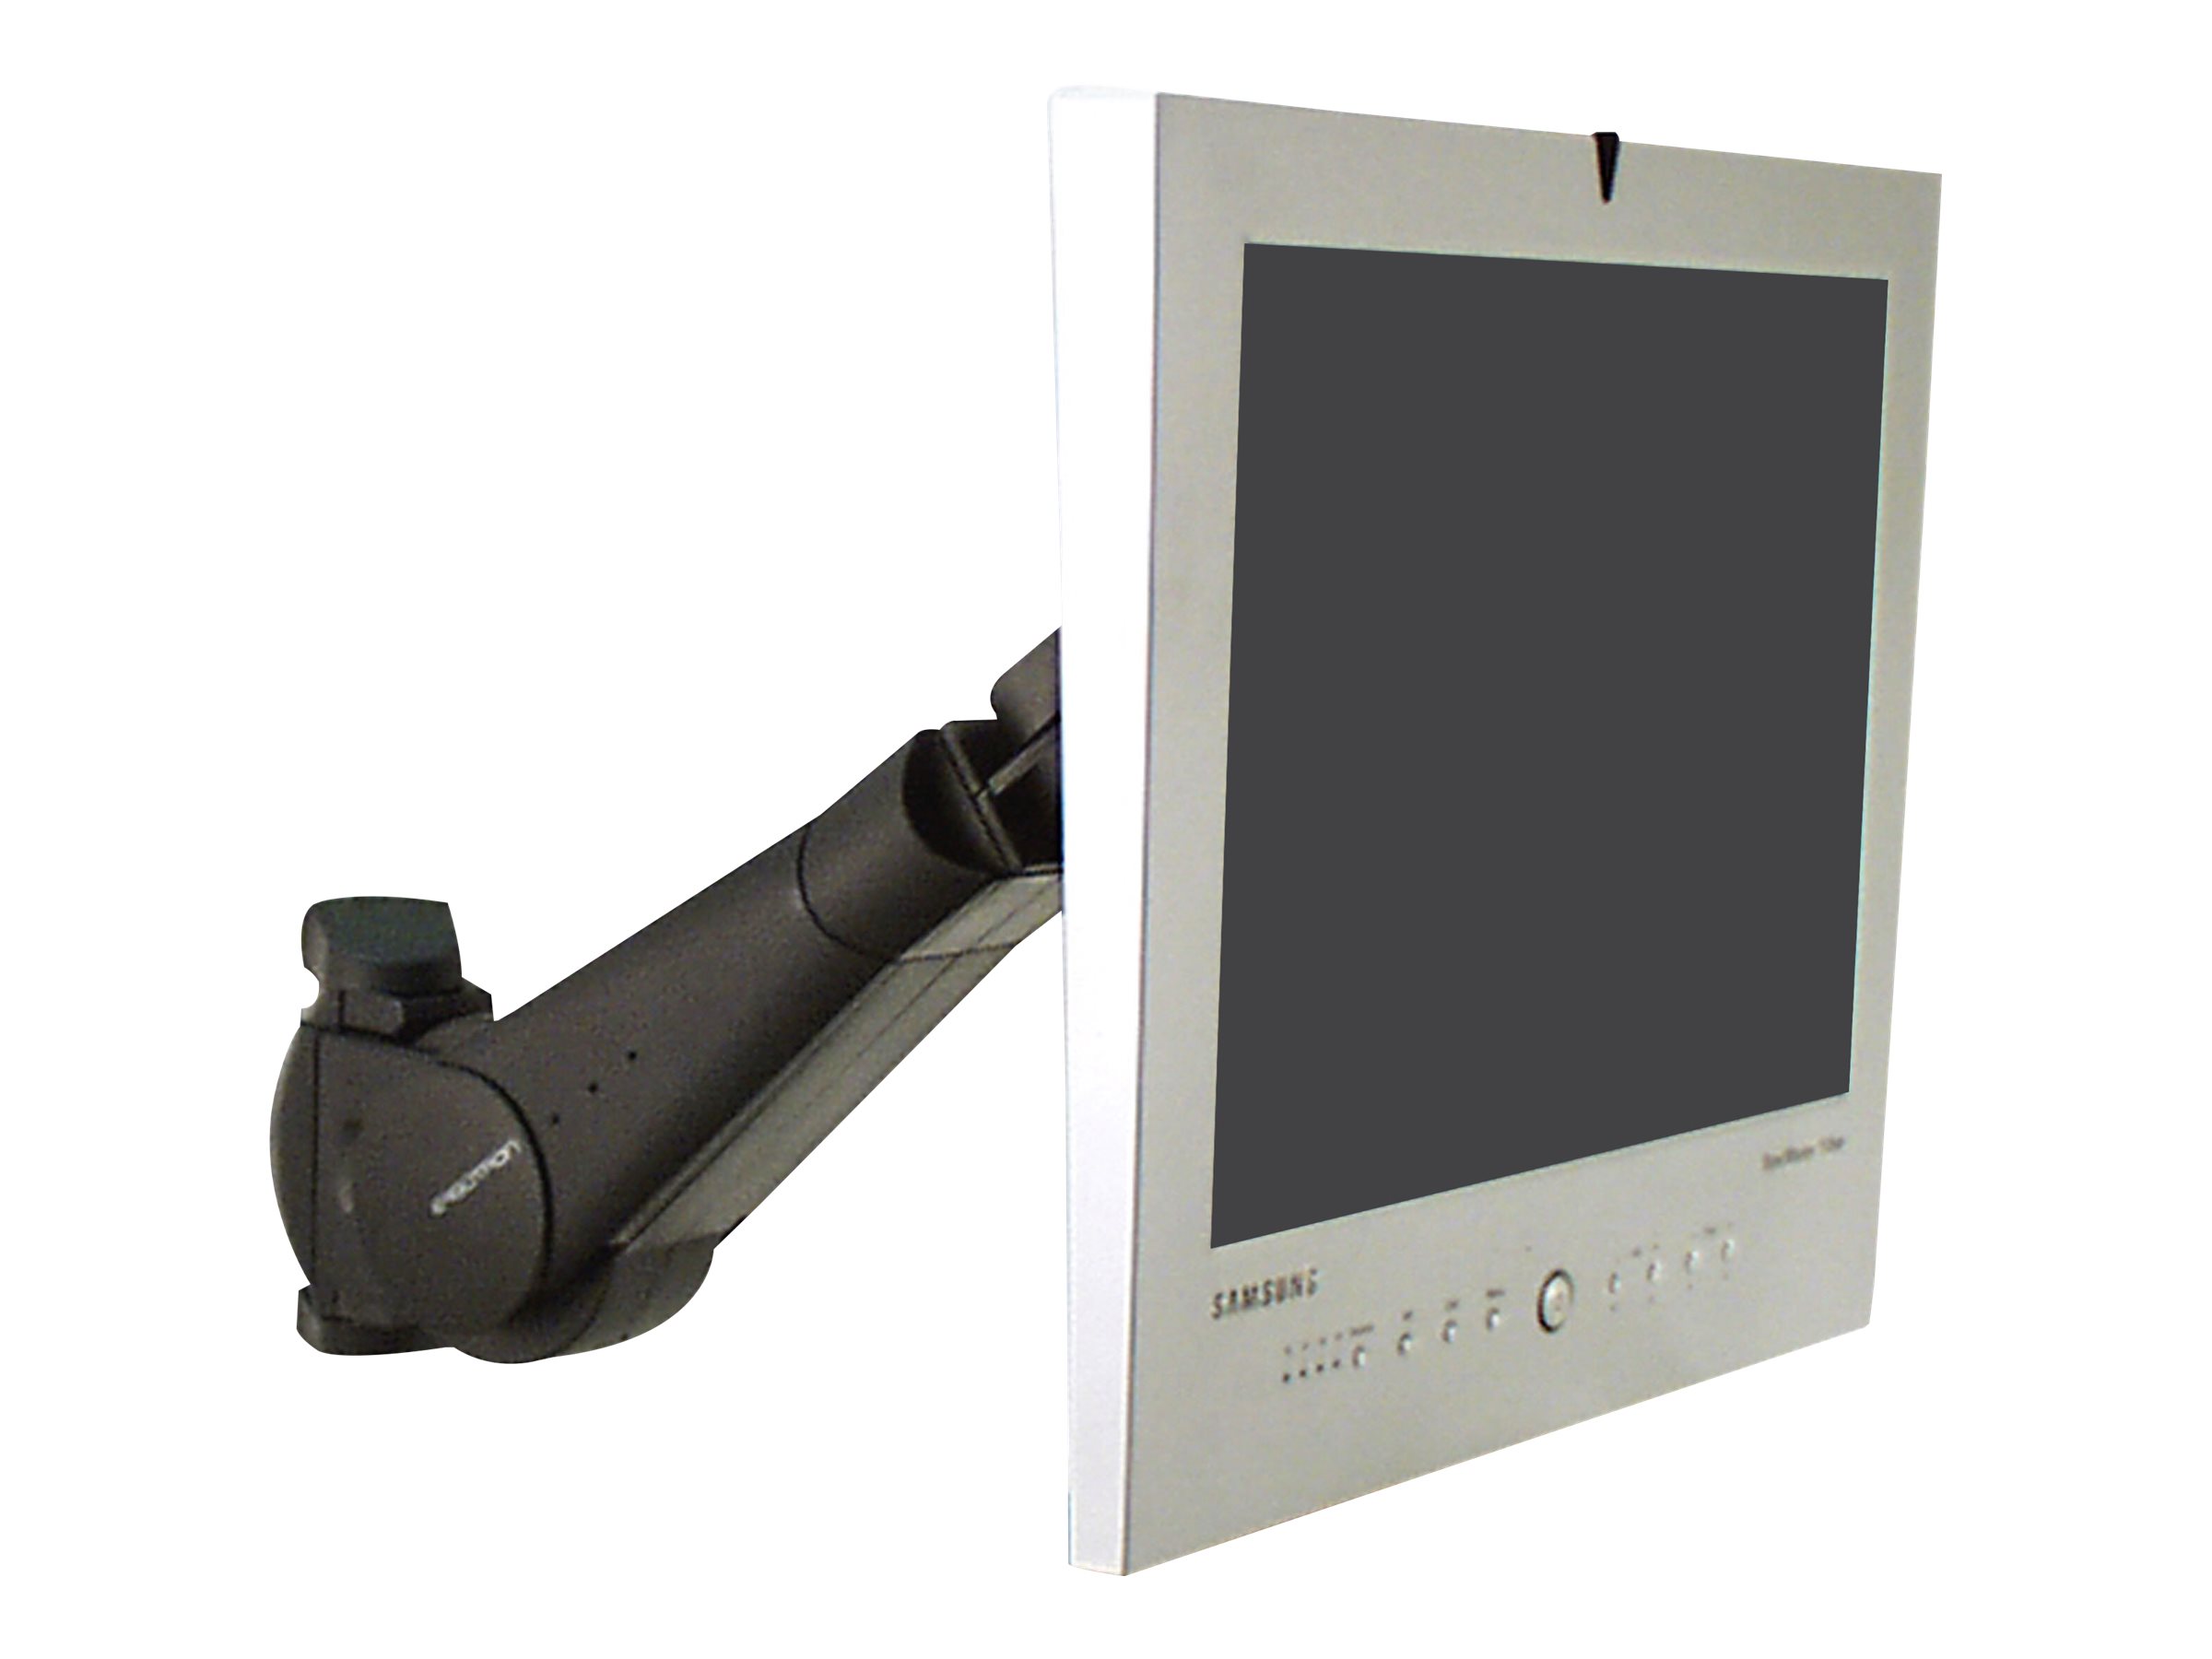 Ergotron 400 Series - Befestigungskit (Monitorarm) - für Monitor - Schwarz - Bildschirmgröße: bis zu 61 cm (bis zu 24 Zoll)